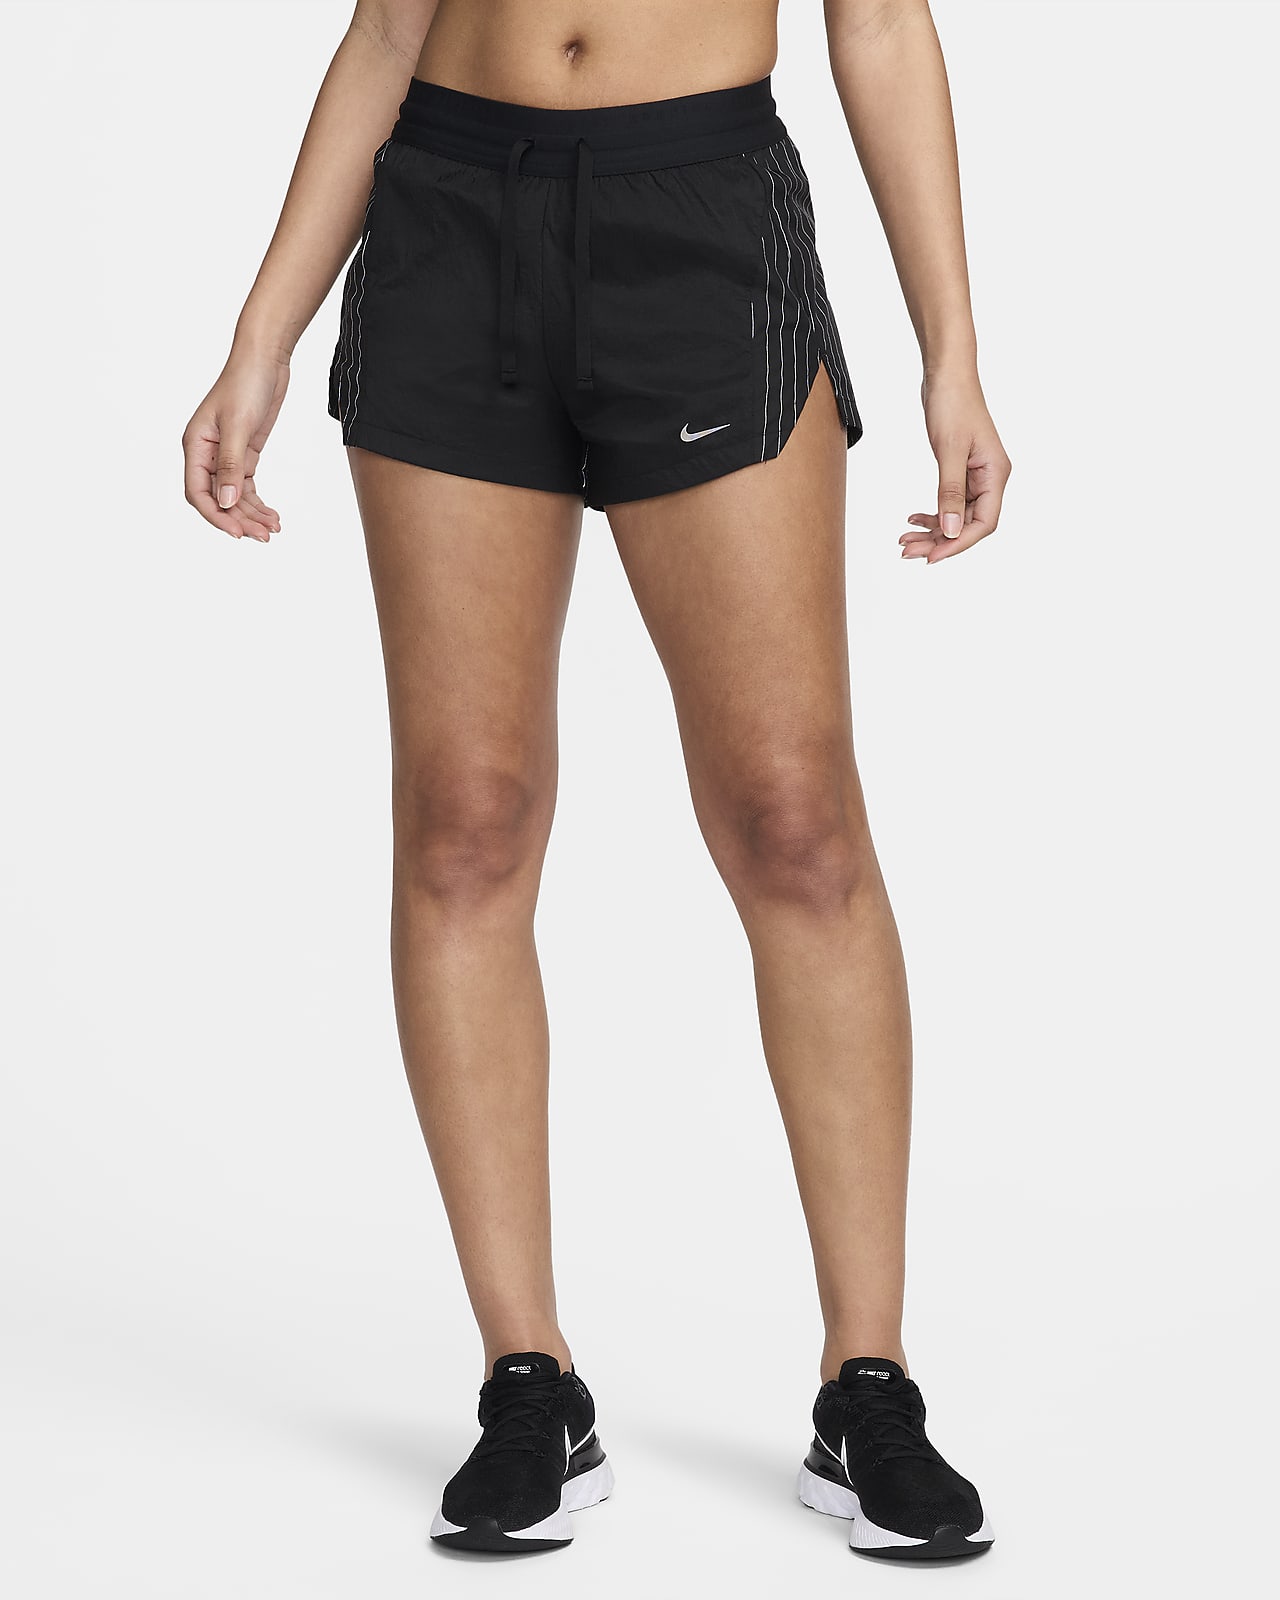 Short de running taille mi-haute avec sous-short intégré 8 cm Nike Running Division pour femme